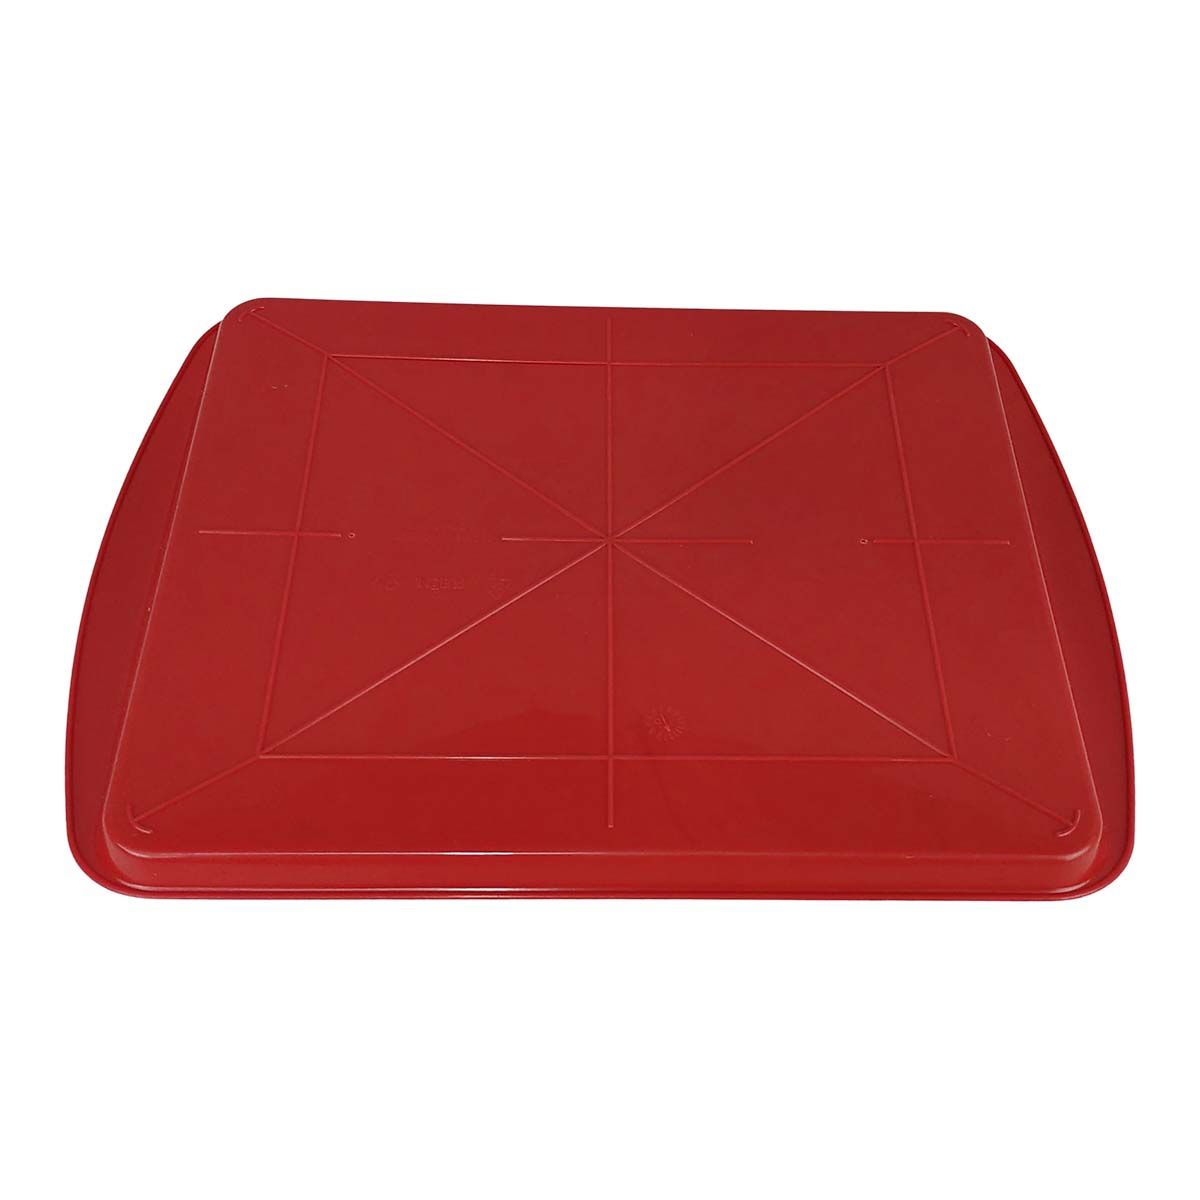 Kit 5x Bandeja Fast-Food Vermelha 43,5x30 Cm - Pleion #4